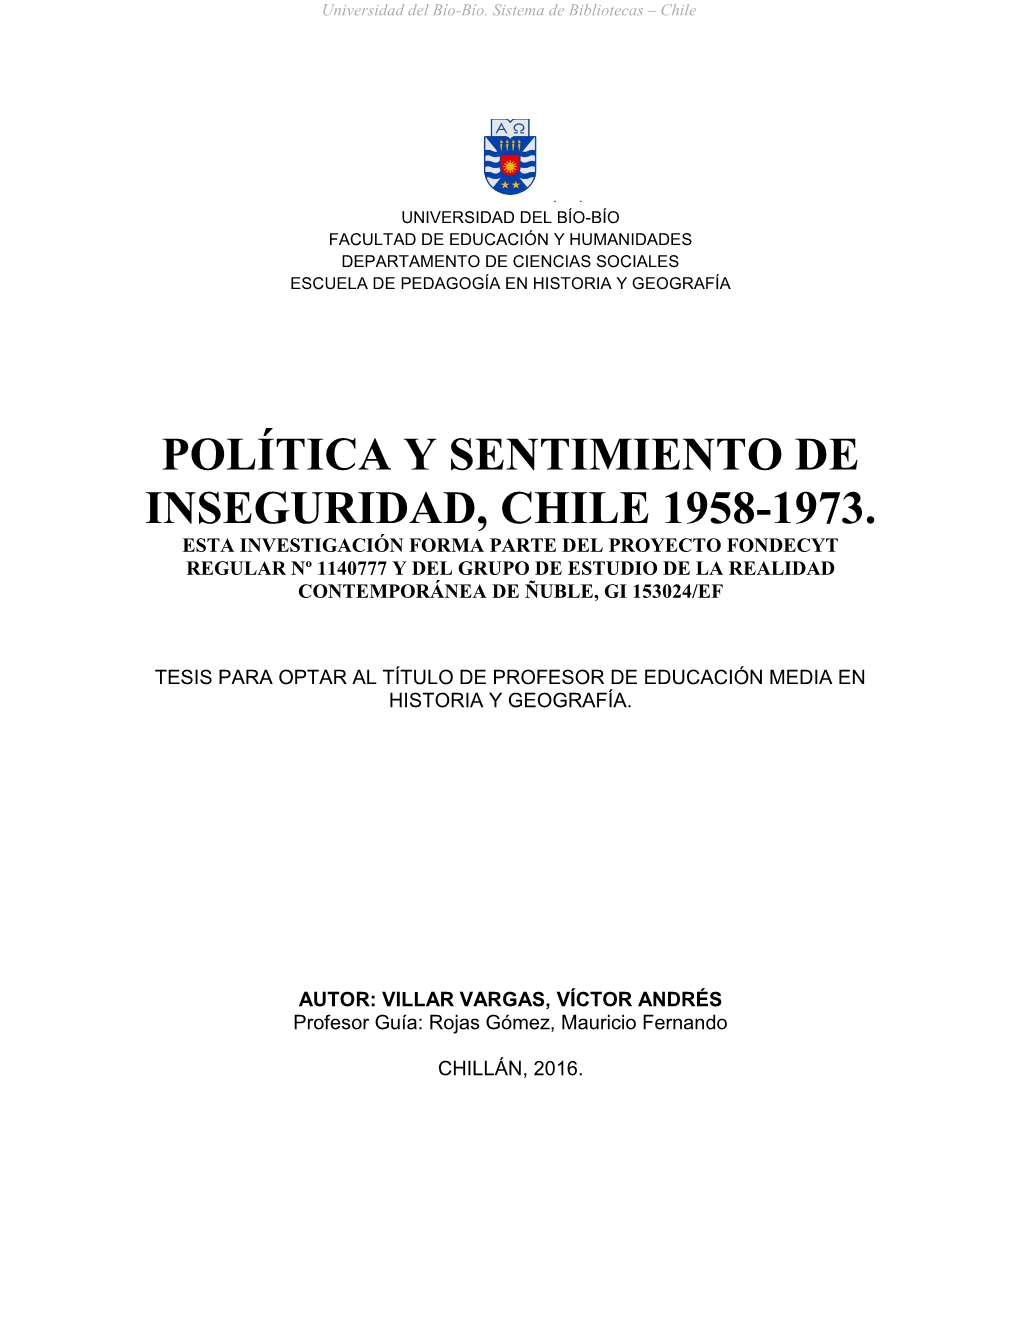 Política Y Sentimiento De Inseguridad, Chile 1958-1973